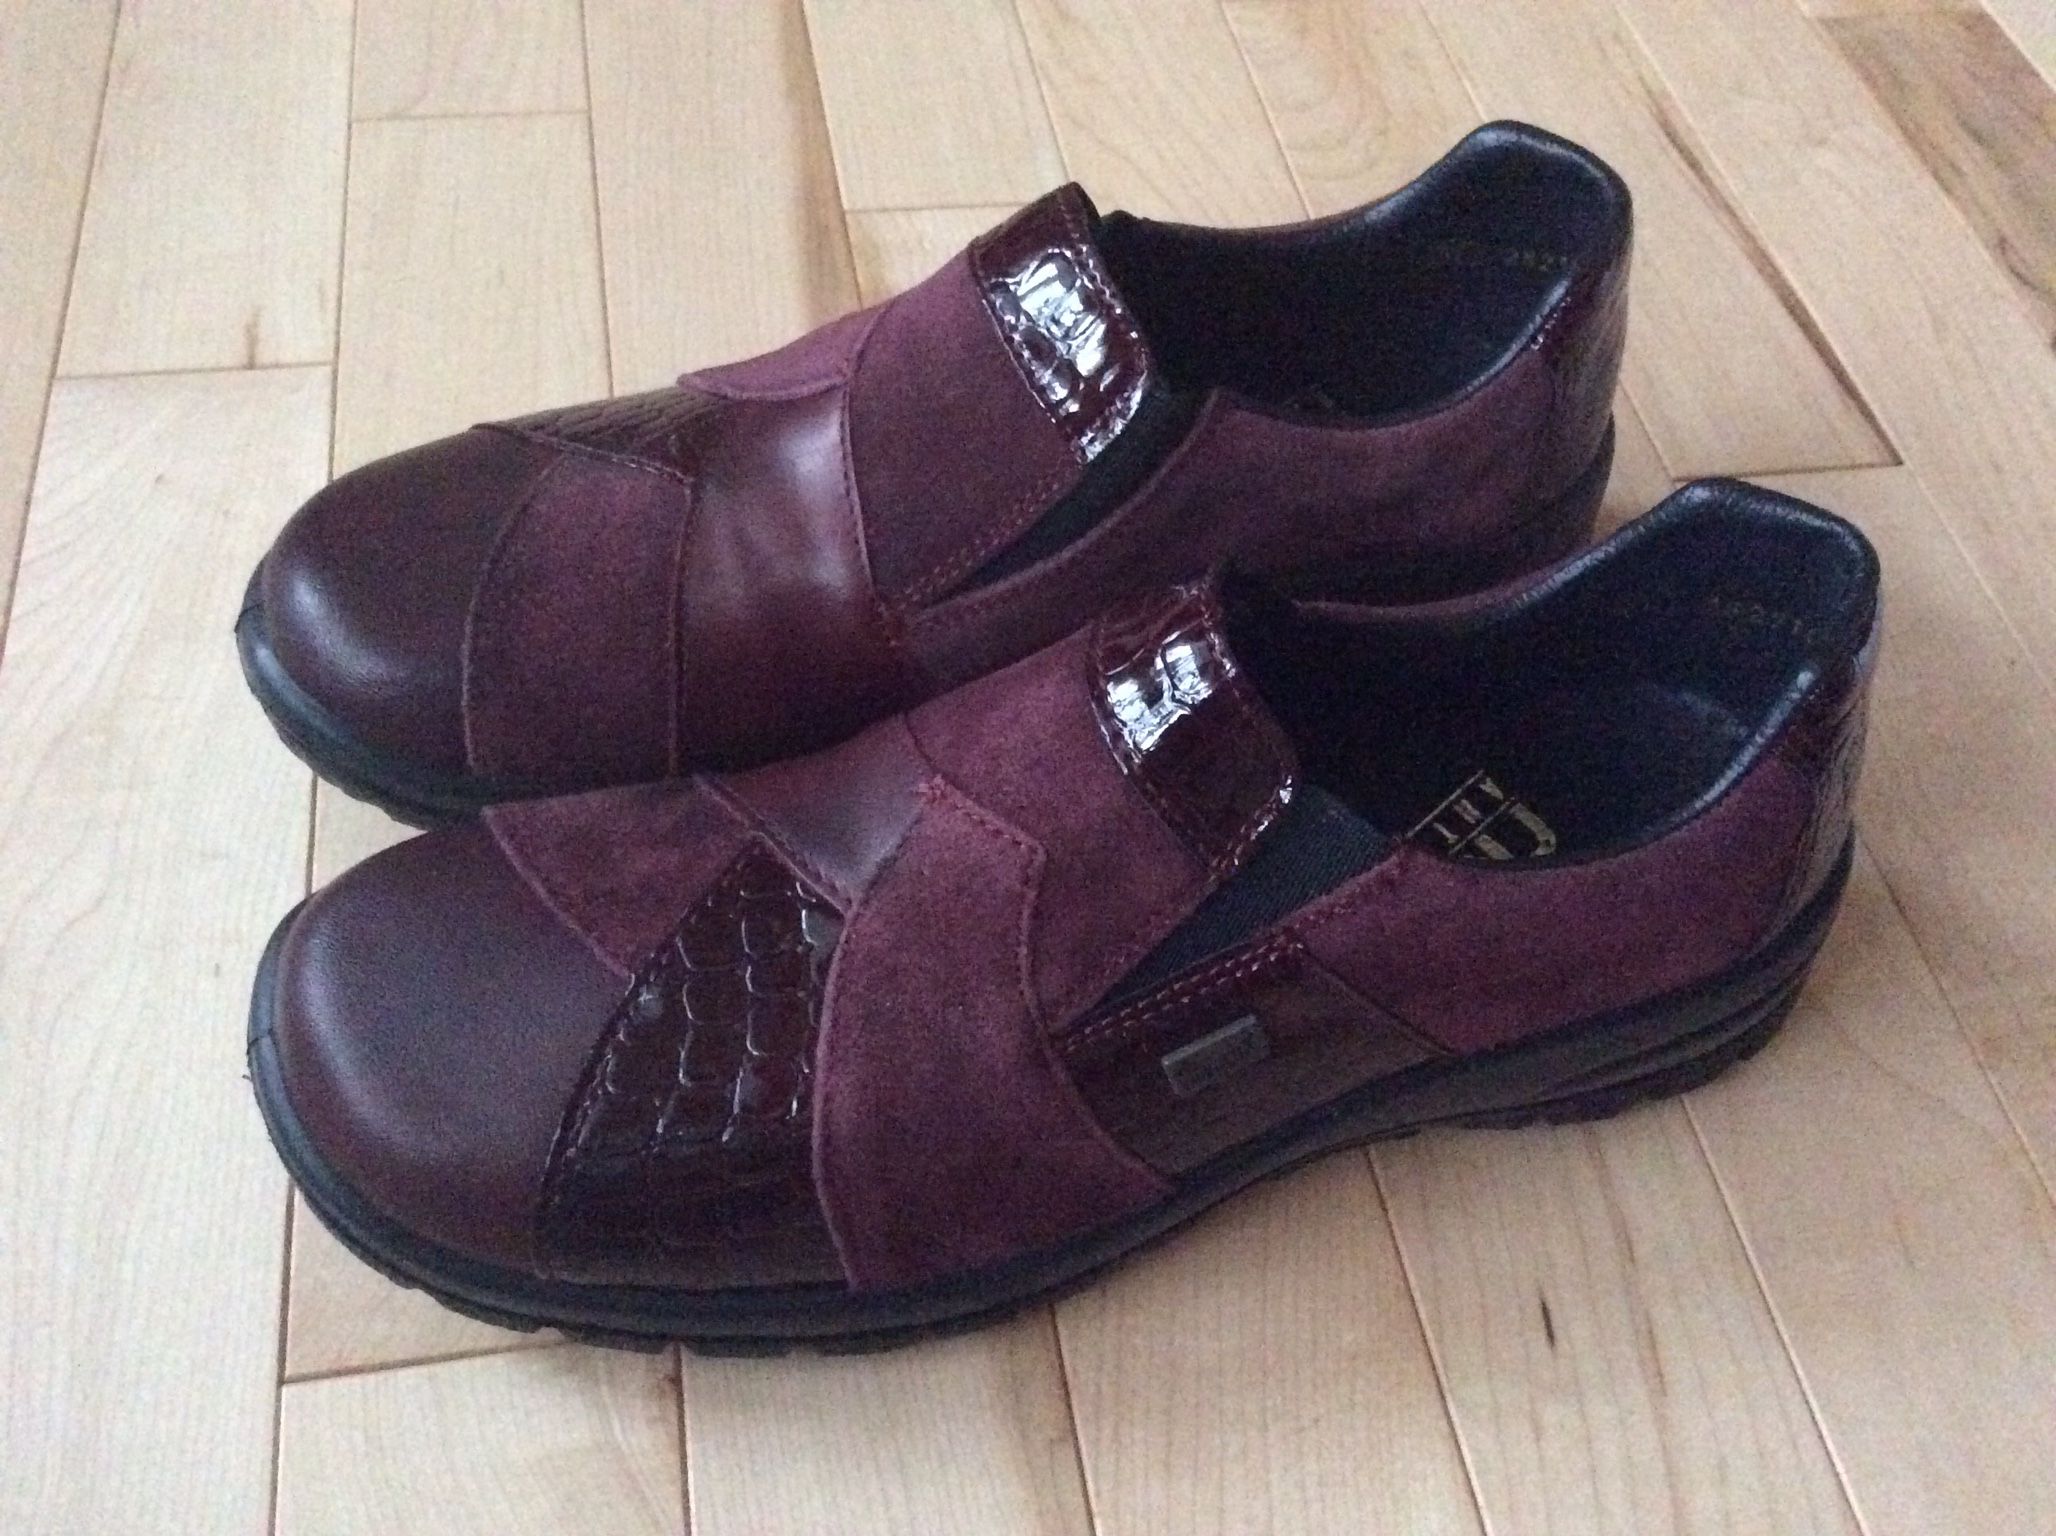 Rieker Brand Women’s Shoes For Autumn, Size US - 6, EUR 37